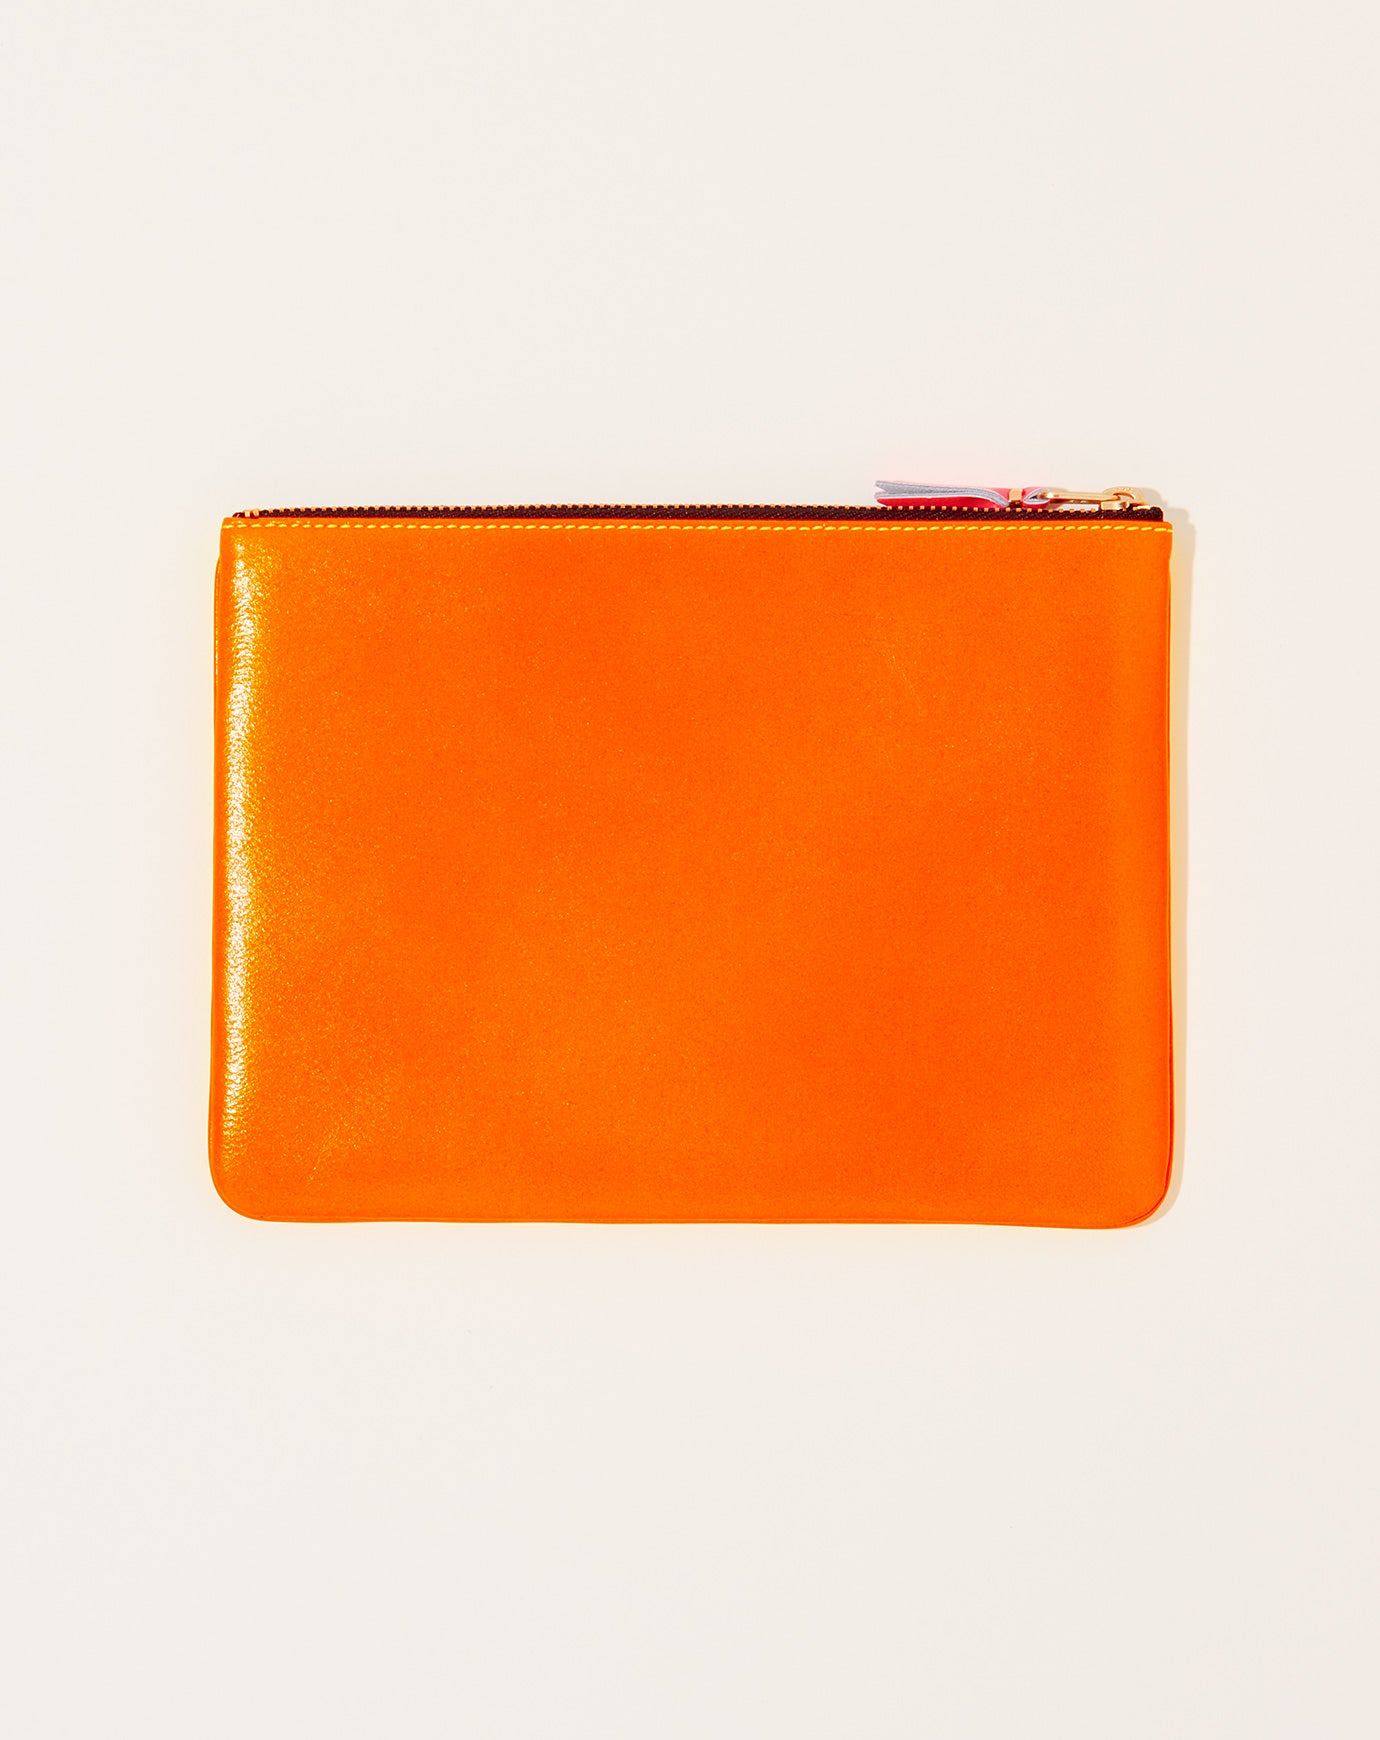 Super Fluo Wallet Zip Pouch Yellow Light Orange | Comme des